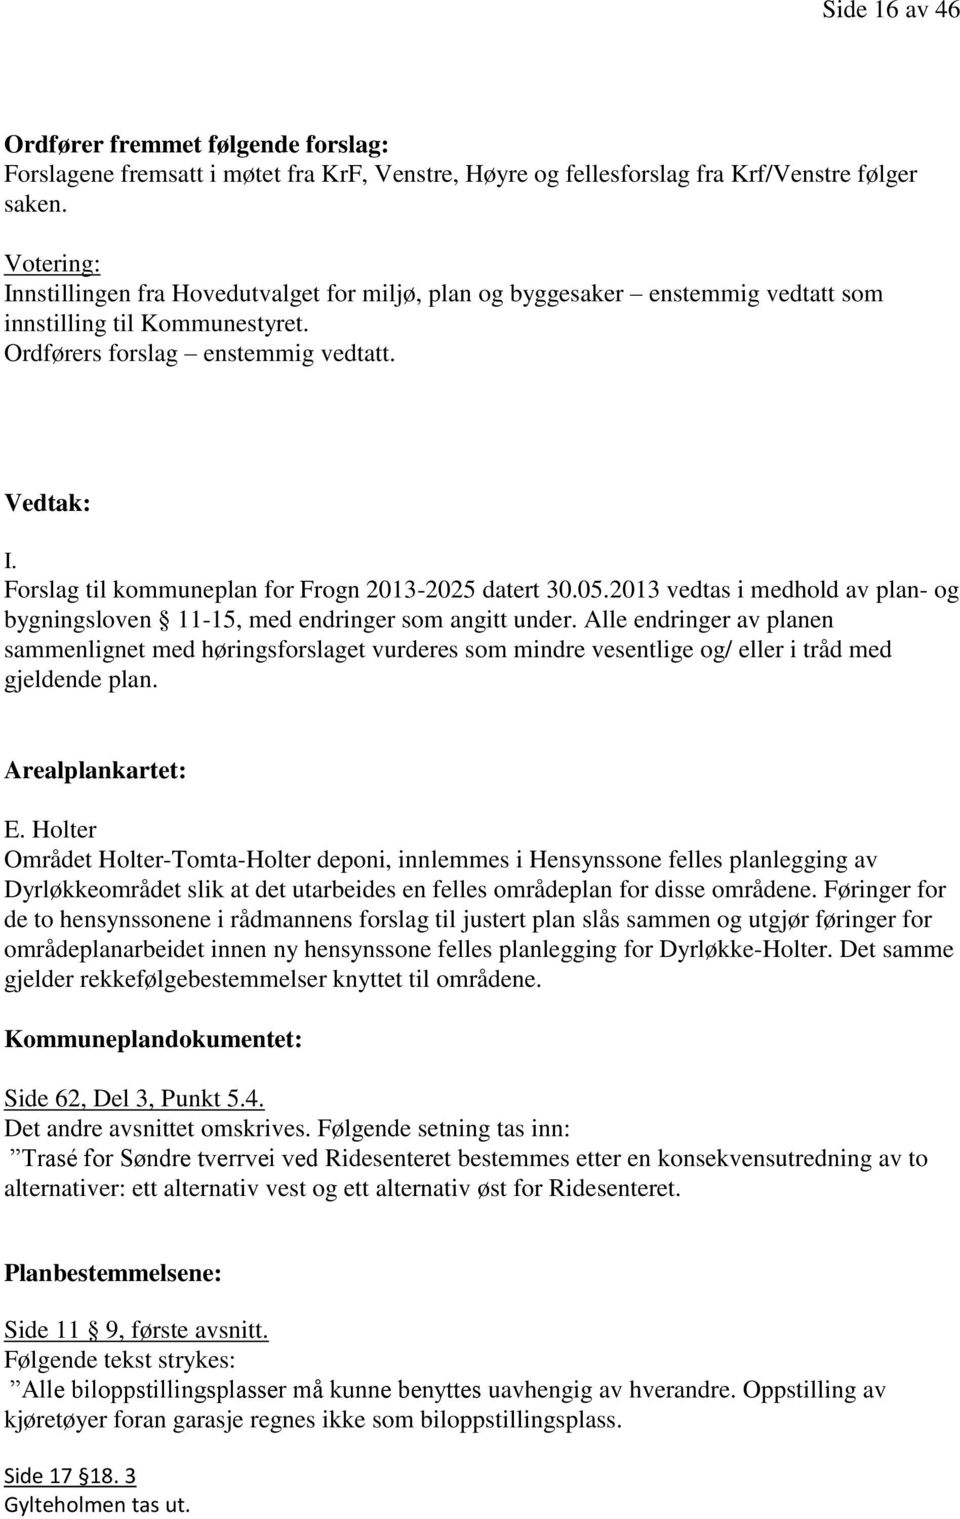 Forslag til kommuneplan for Frogn 2013-2025 datert 30.05.2013 vedtas i medhold av plan- og bygningsloven 11-15, med endringer som angitt under.